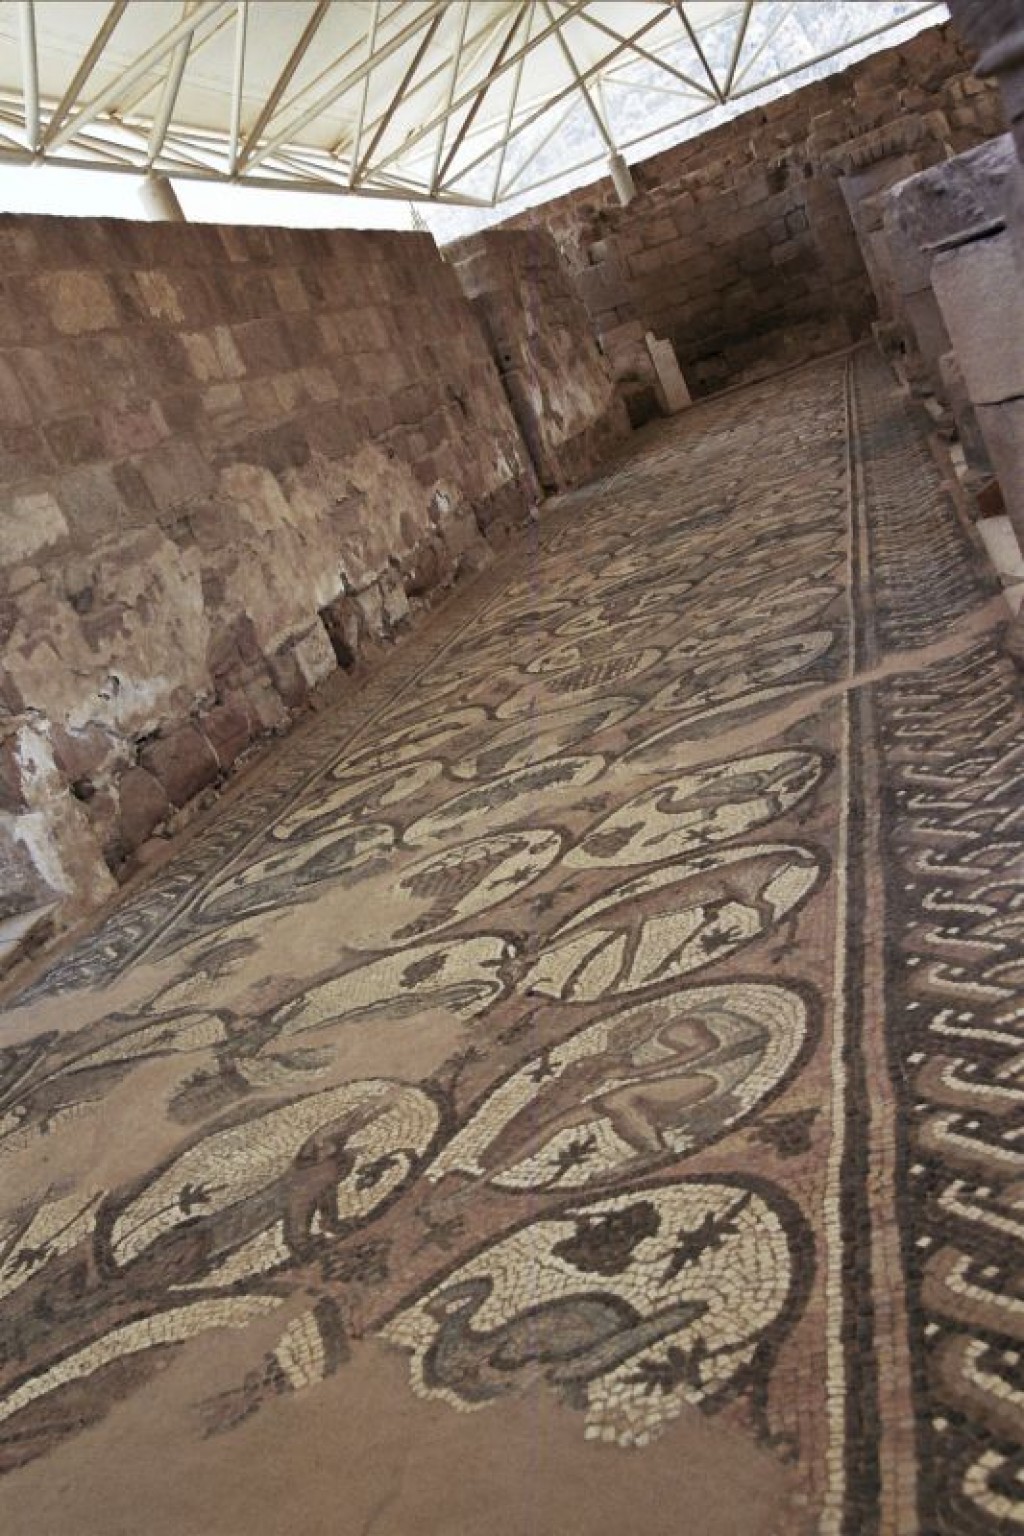 The church has beautiful mosaic floors.